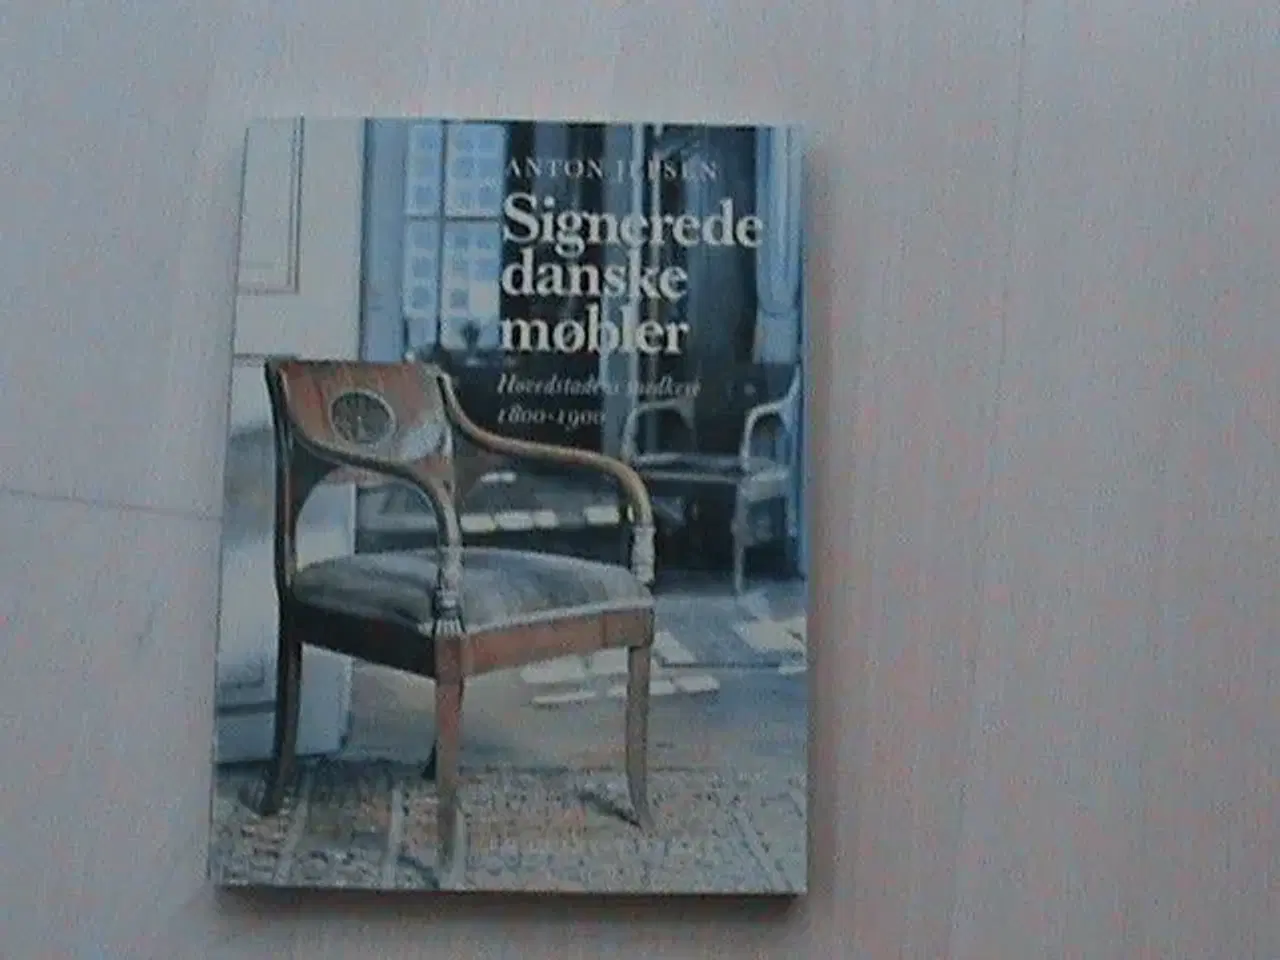 Billede 1 - Bog: "Signerede danske møbler", Anton Jepsen